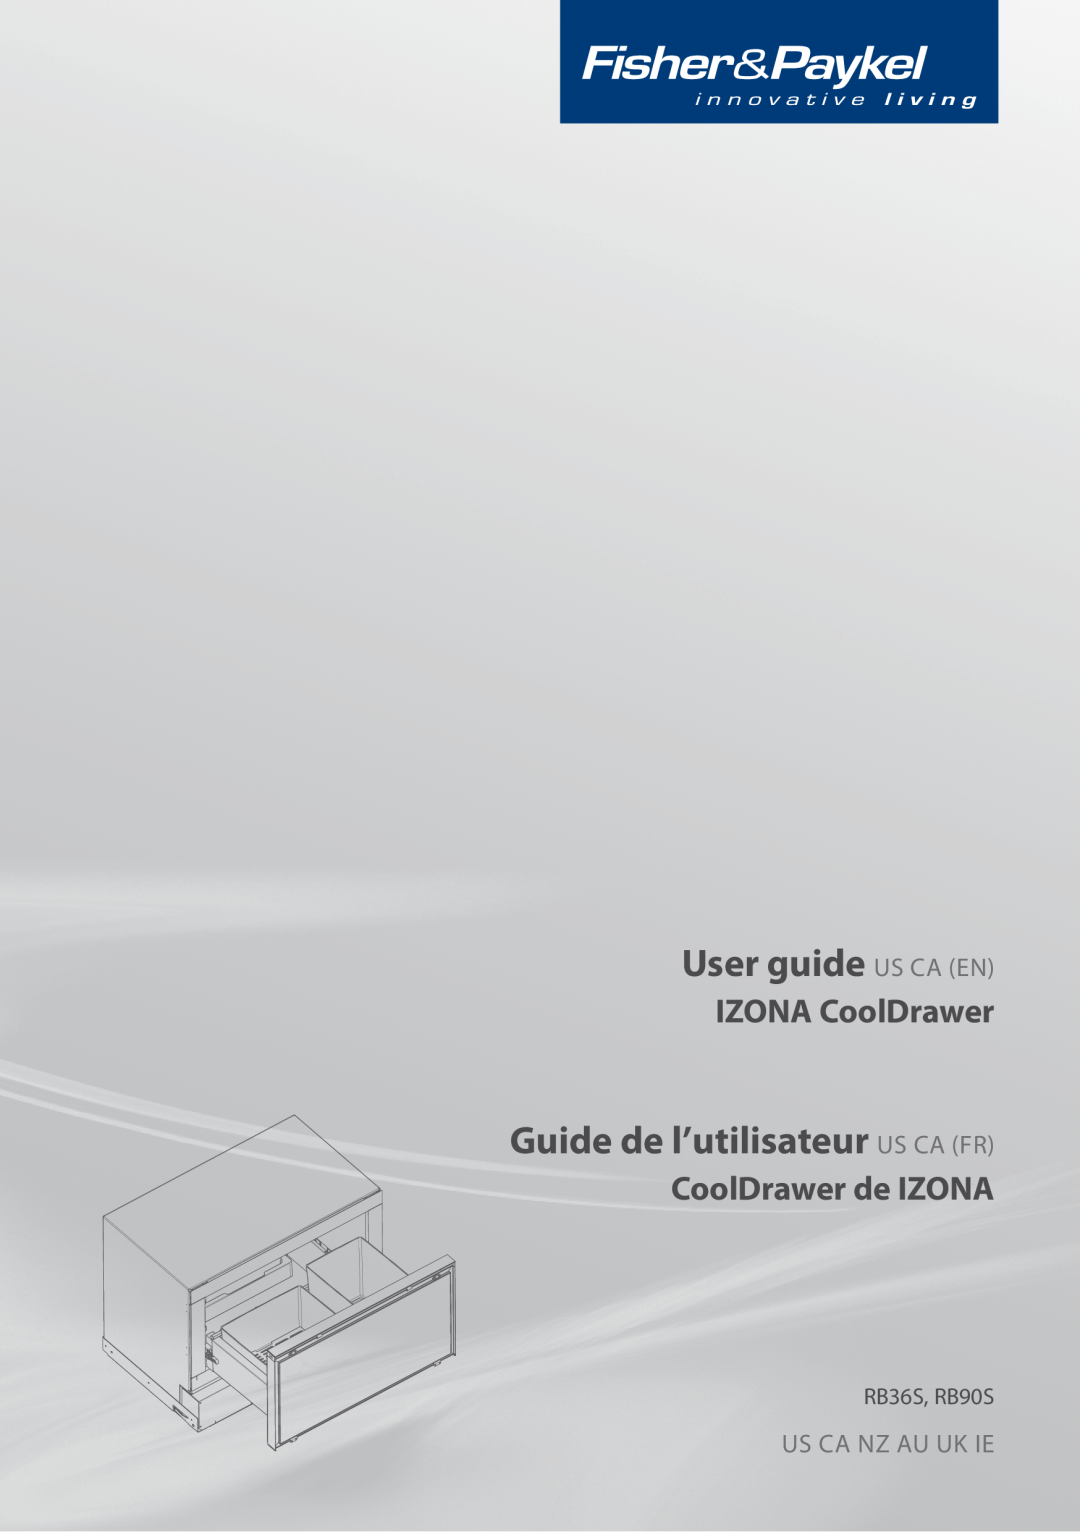 Fisher & Paykel RB365 manual User guide US CA EN, Guide de l’utilisateur US CA FR, IZONA CoolDrawer, CoolDrawer de IZONA 